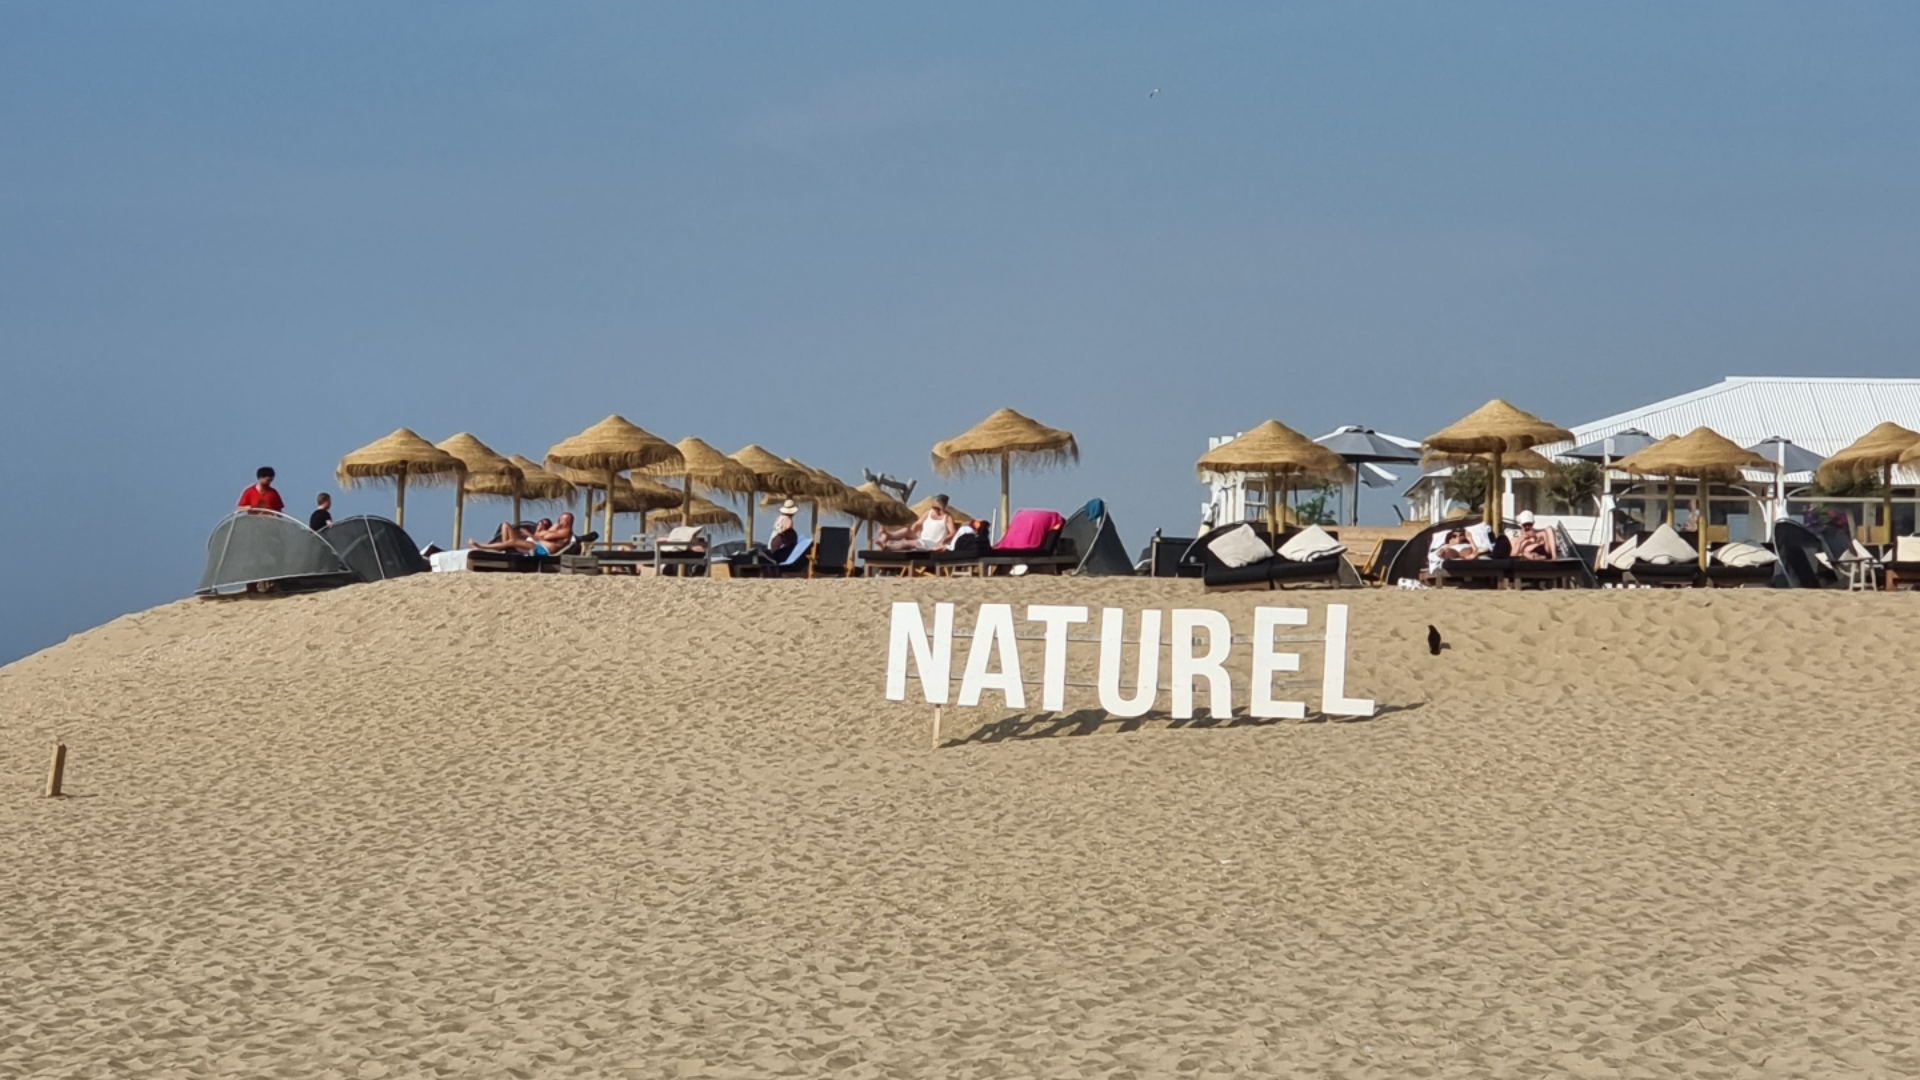 Op het strand van Scheveningen staan grote witte letters van NATUREL. De lucht is blauw en op de achtergrond zie je ligplekken met houten parasols